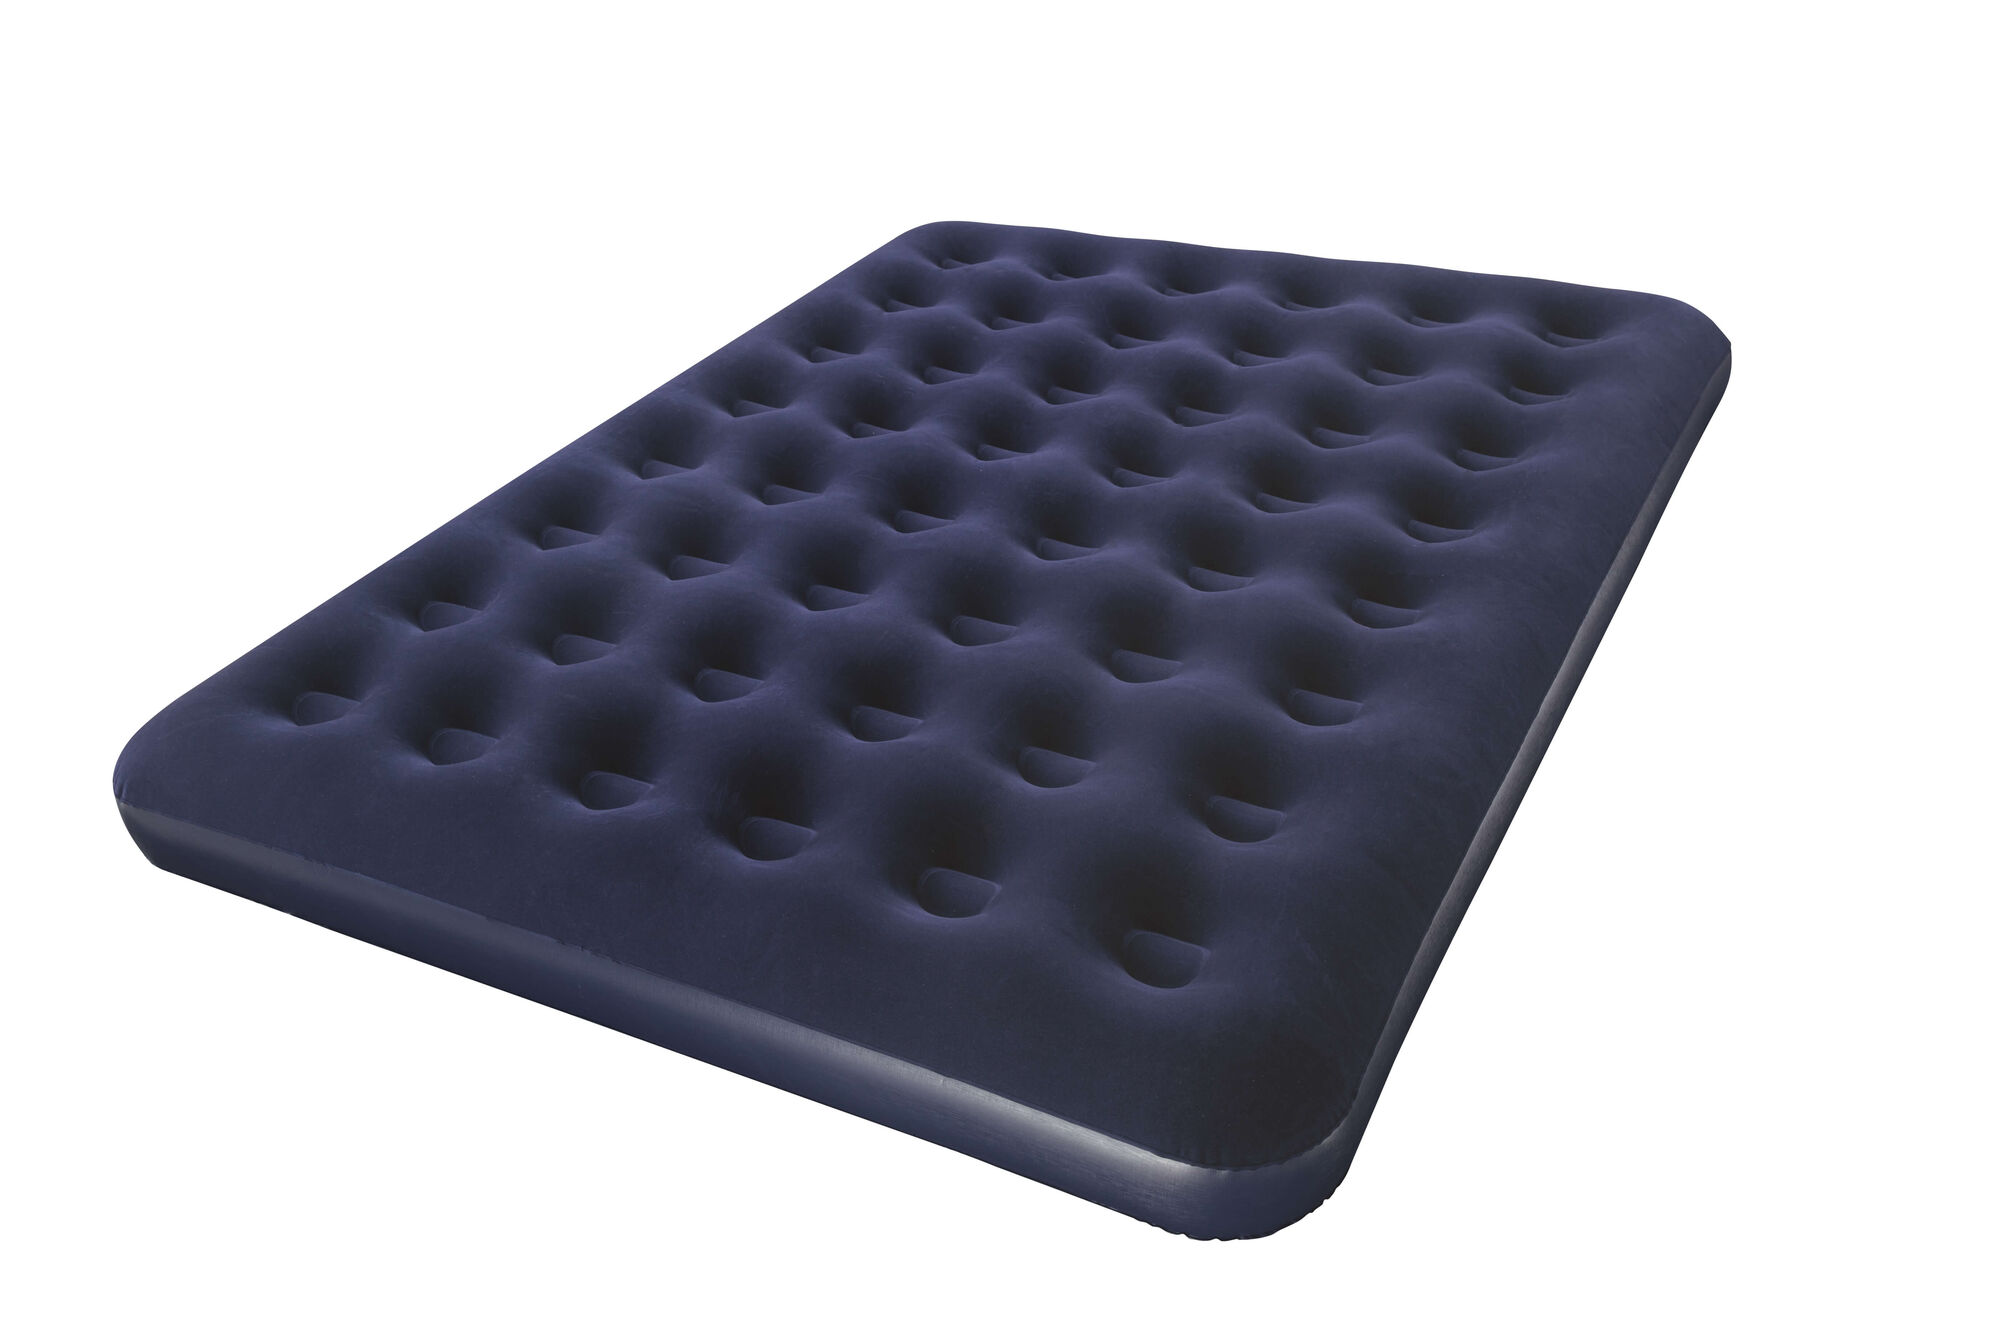 Надувной матрас intex 67997 camping mat